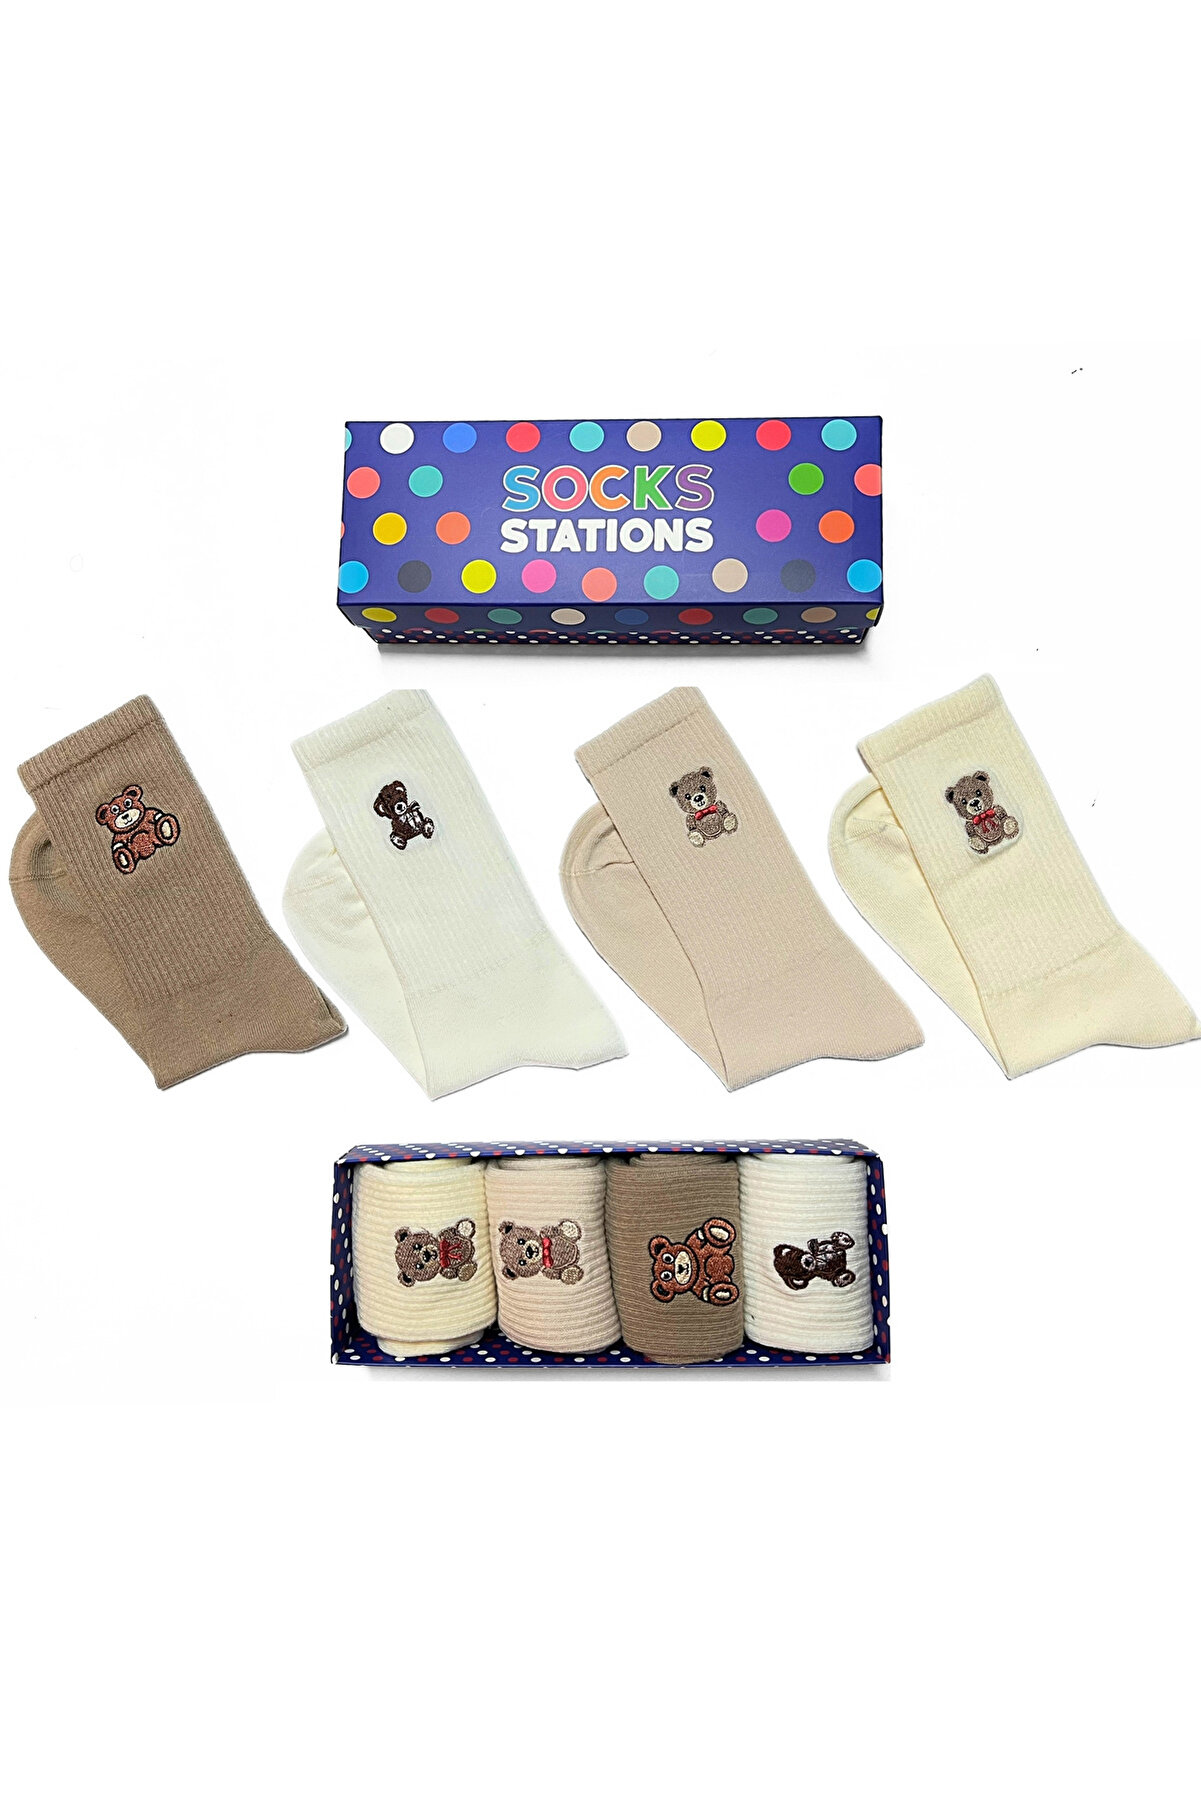 Socks Stations Ünisex Ayıcık Nakışlı Soket Çorap Seti - Renkli Çorap Kutusu 4'lü